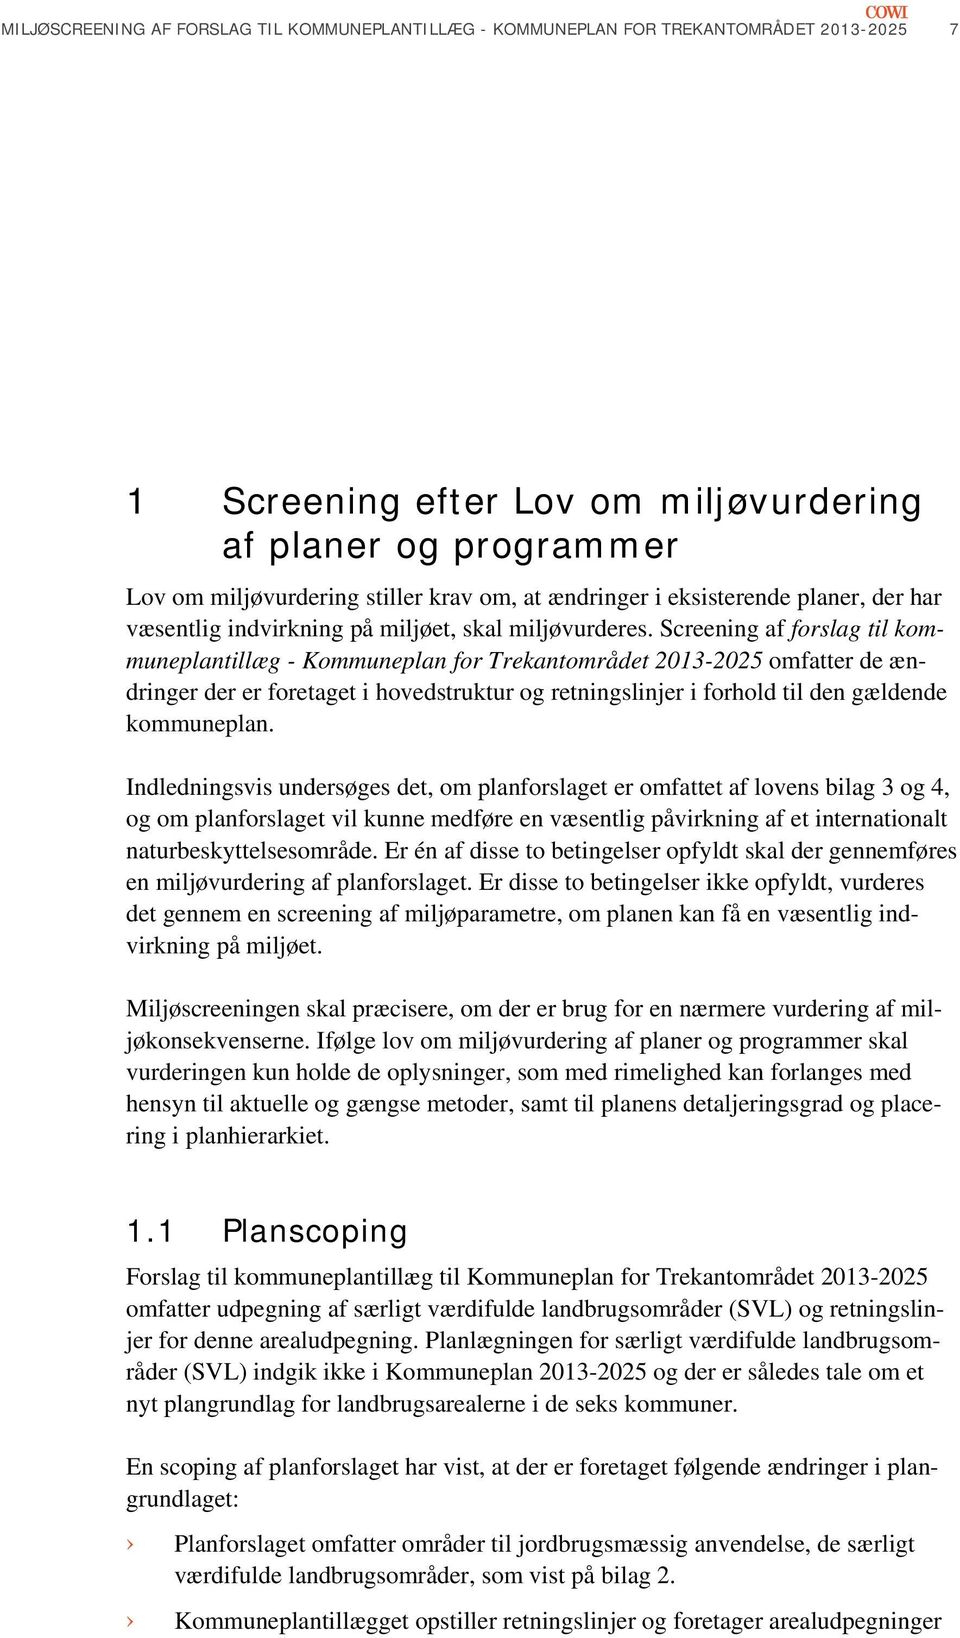 Screening af forslag til kommuneplantillæg - Kommuneplan for Trekantområdet 2013-2025 omfatter de ændringer der er foretaget i hovedstruktur og retningslinjer i forhold til den gældende kommuneplan.